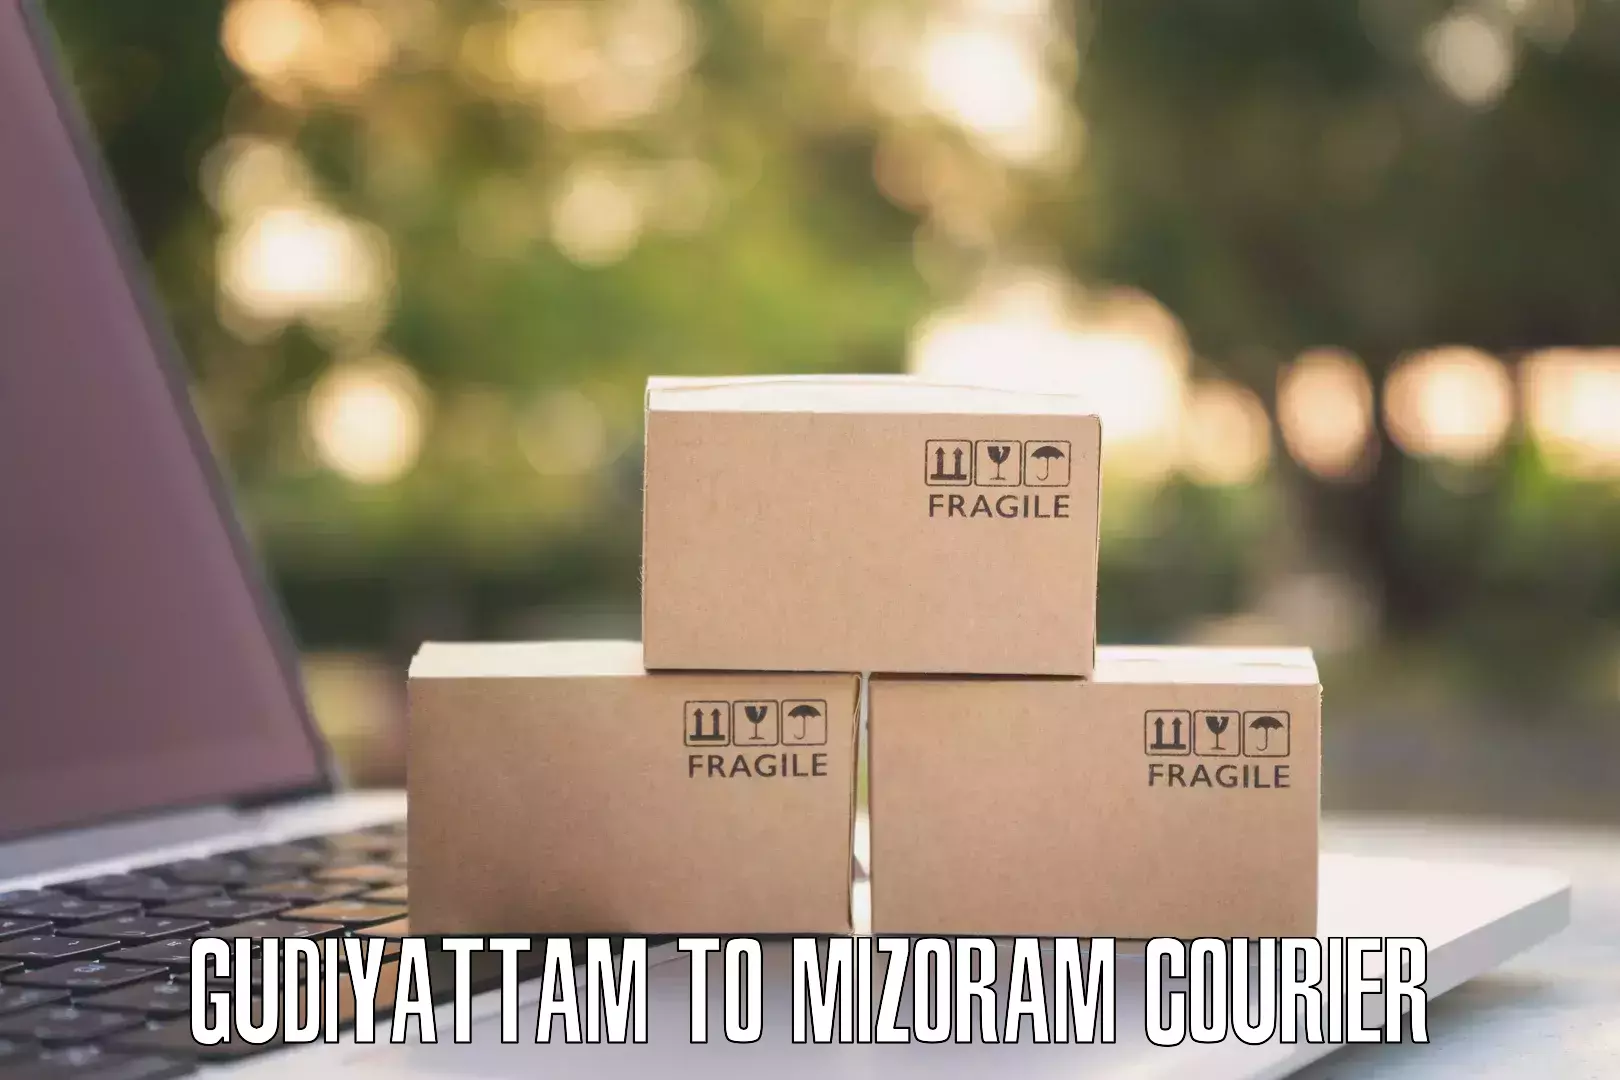 High-priority parcel service Gudiyattam to Darlawn